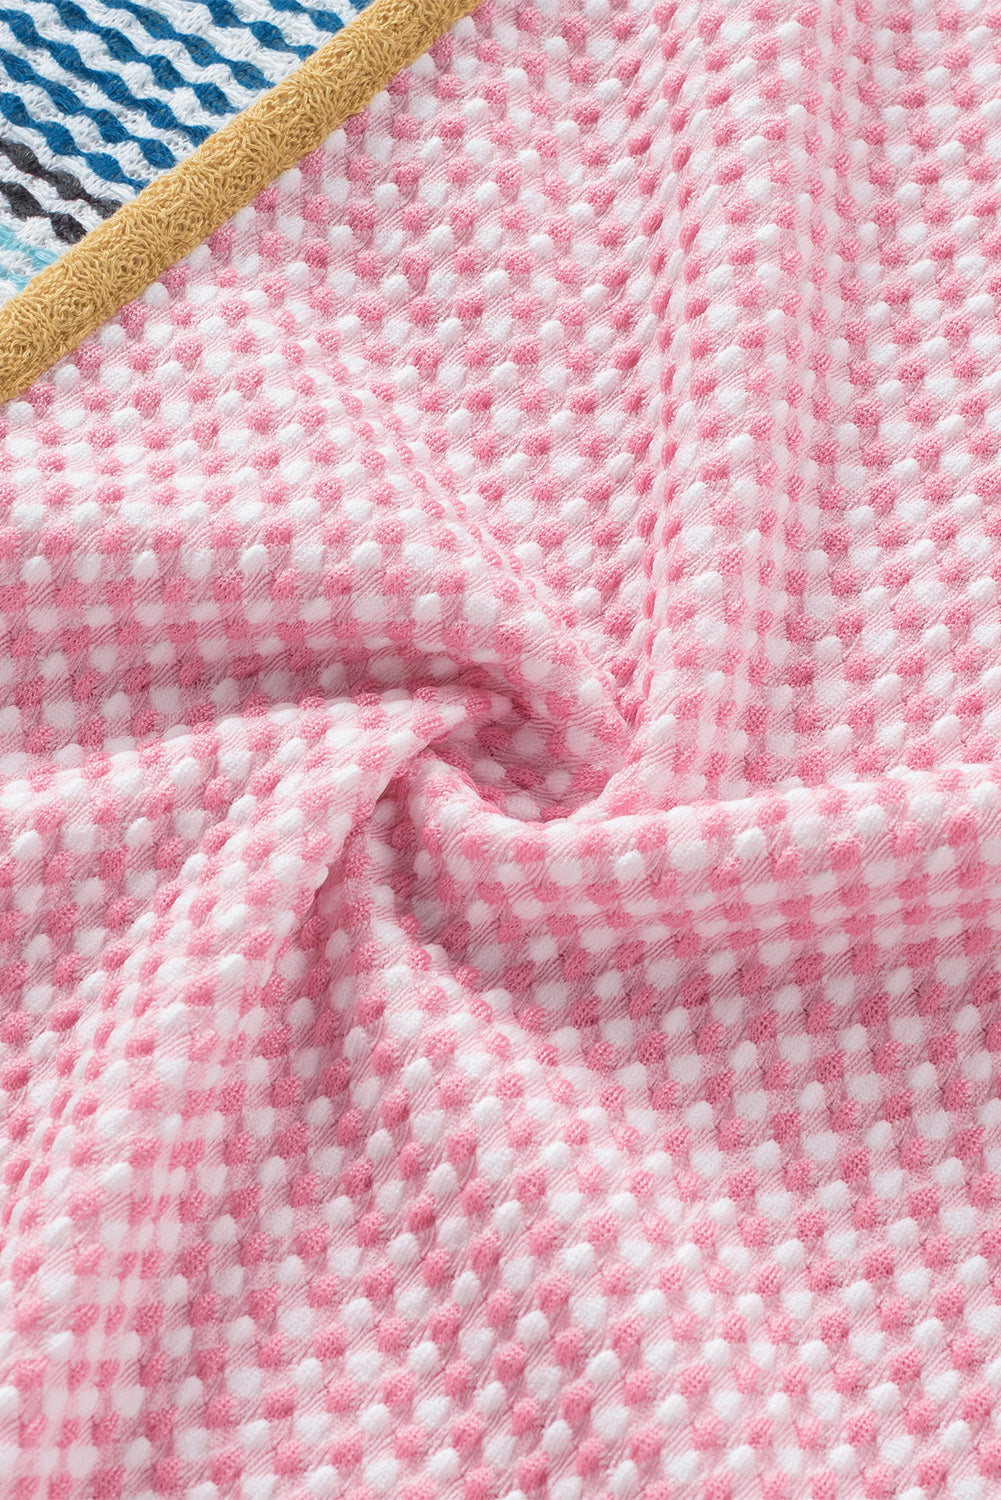 Večbarvna pletena obleka A-kroja s črtastimi barvnimi bloki